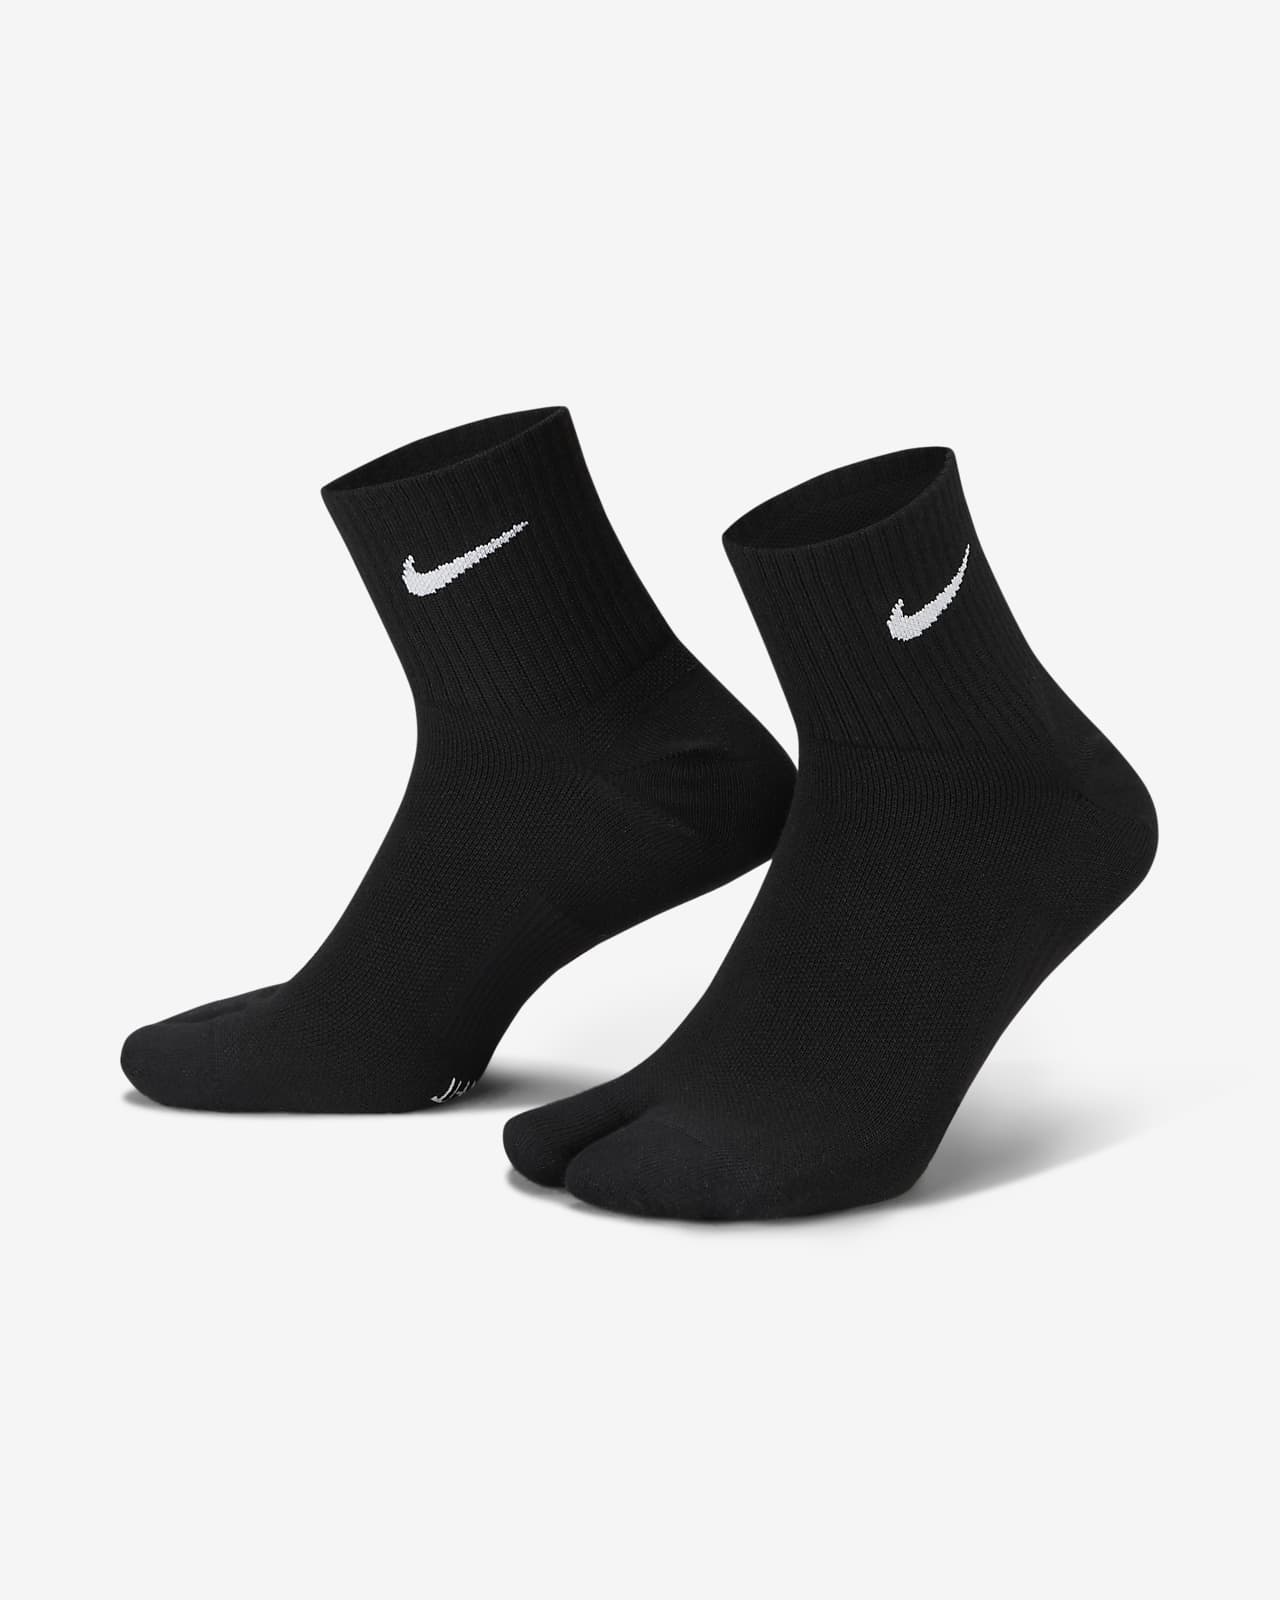 Nike Everyday Plus Calcetines tobilleros ligeros con separación para los dedos